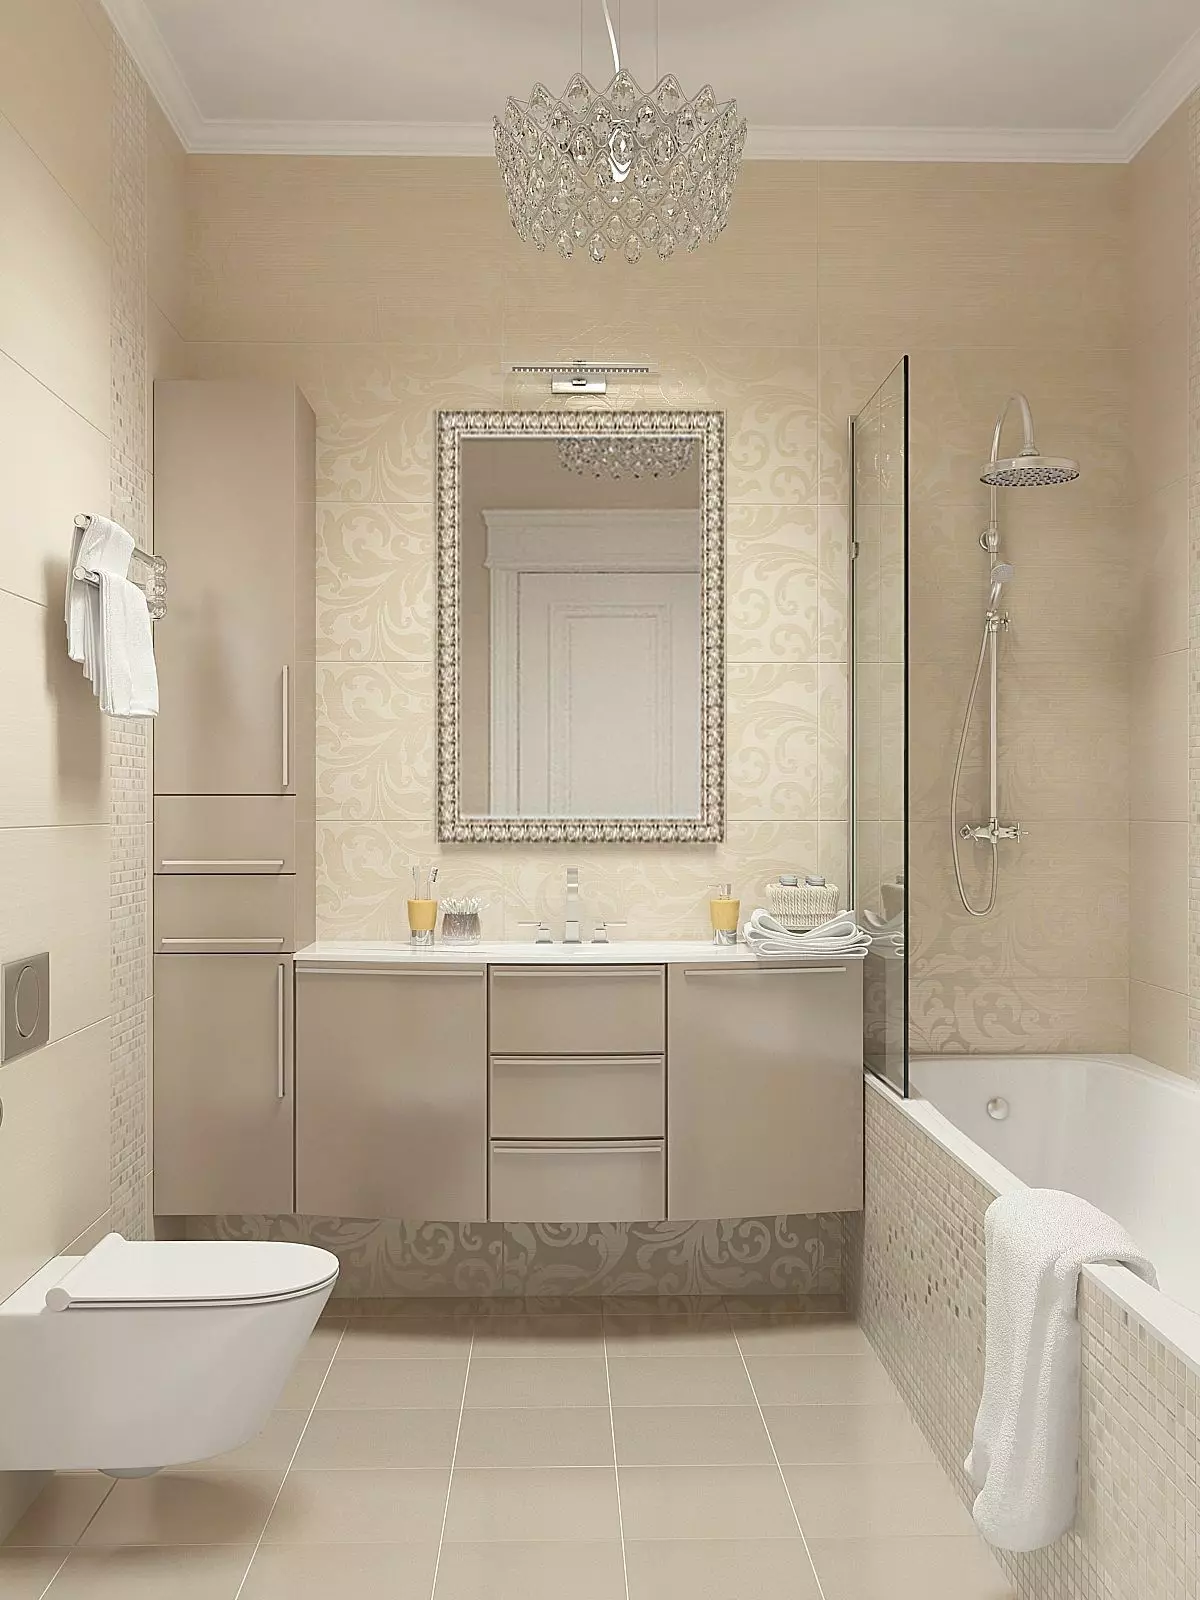 रूस और दुनिया के अन्य देशों में बाथरूम के डिजाइन की तुलना करें